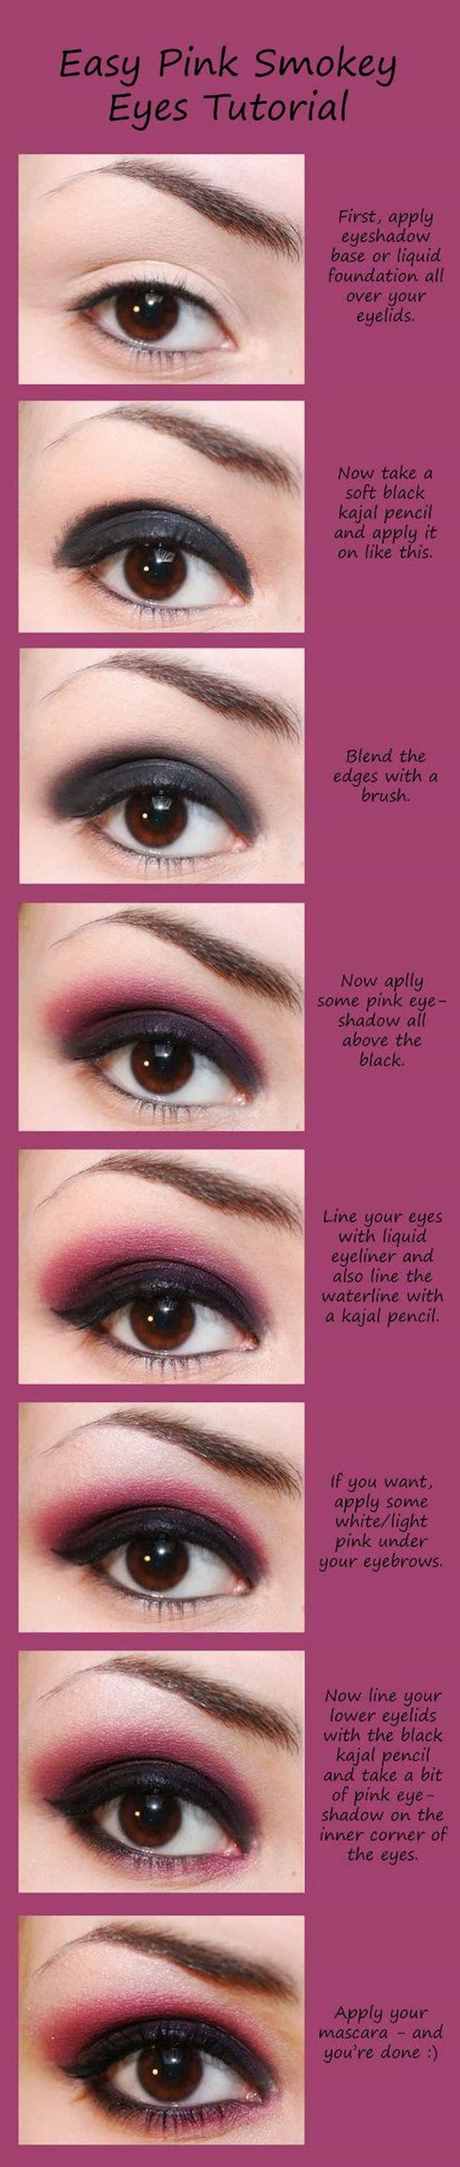 how-to-put-on-eye-makeup-13_8 Hoe maak je oogmakeup